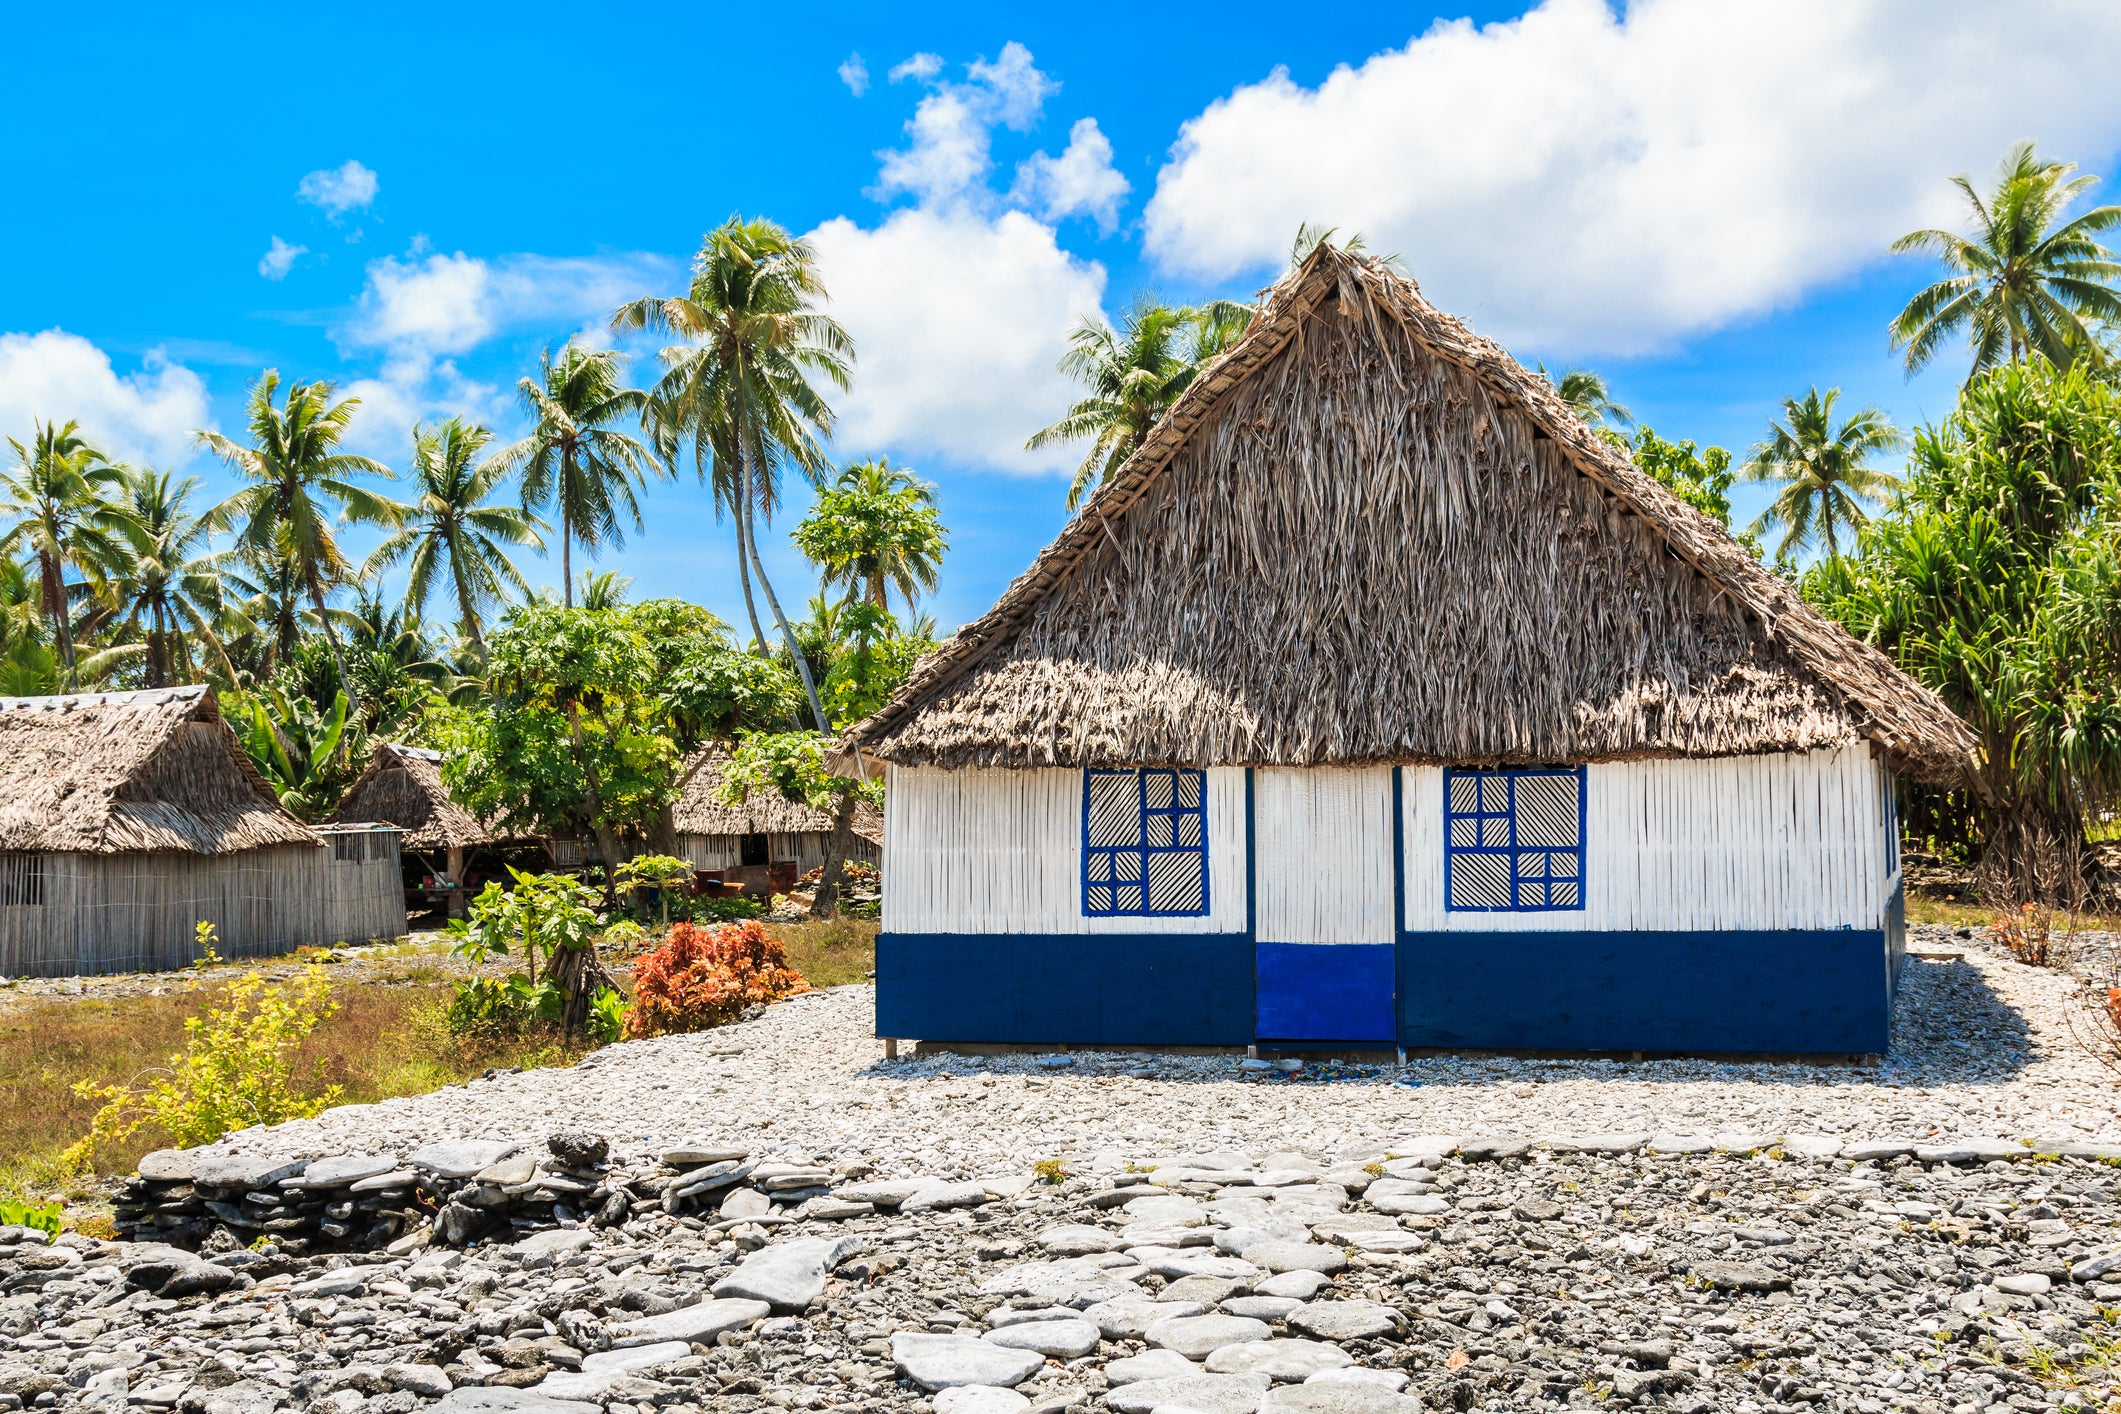 Kiribati; good for travellers